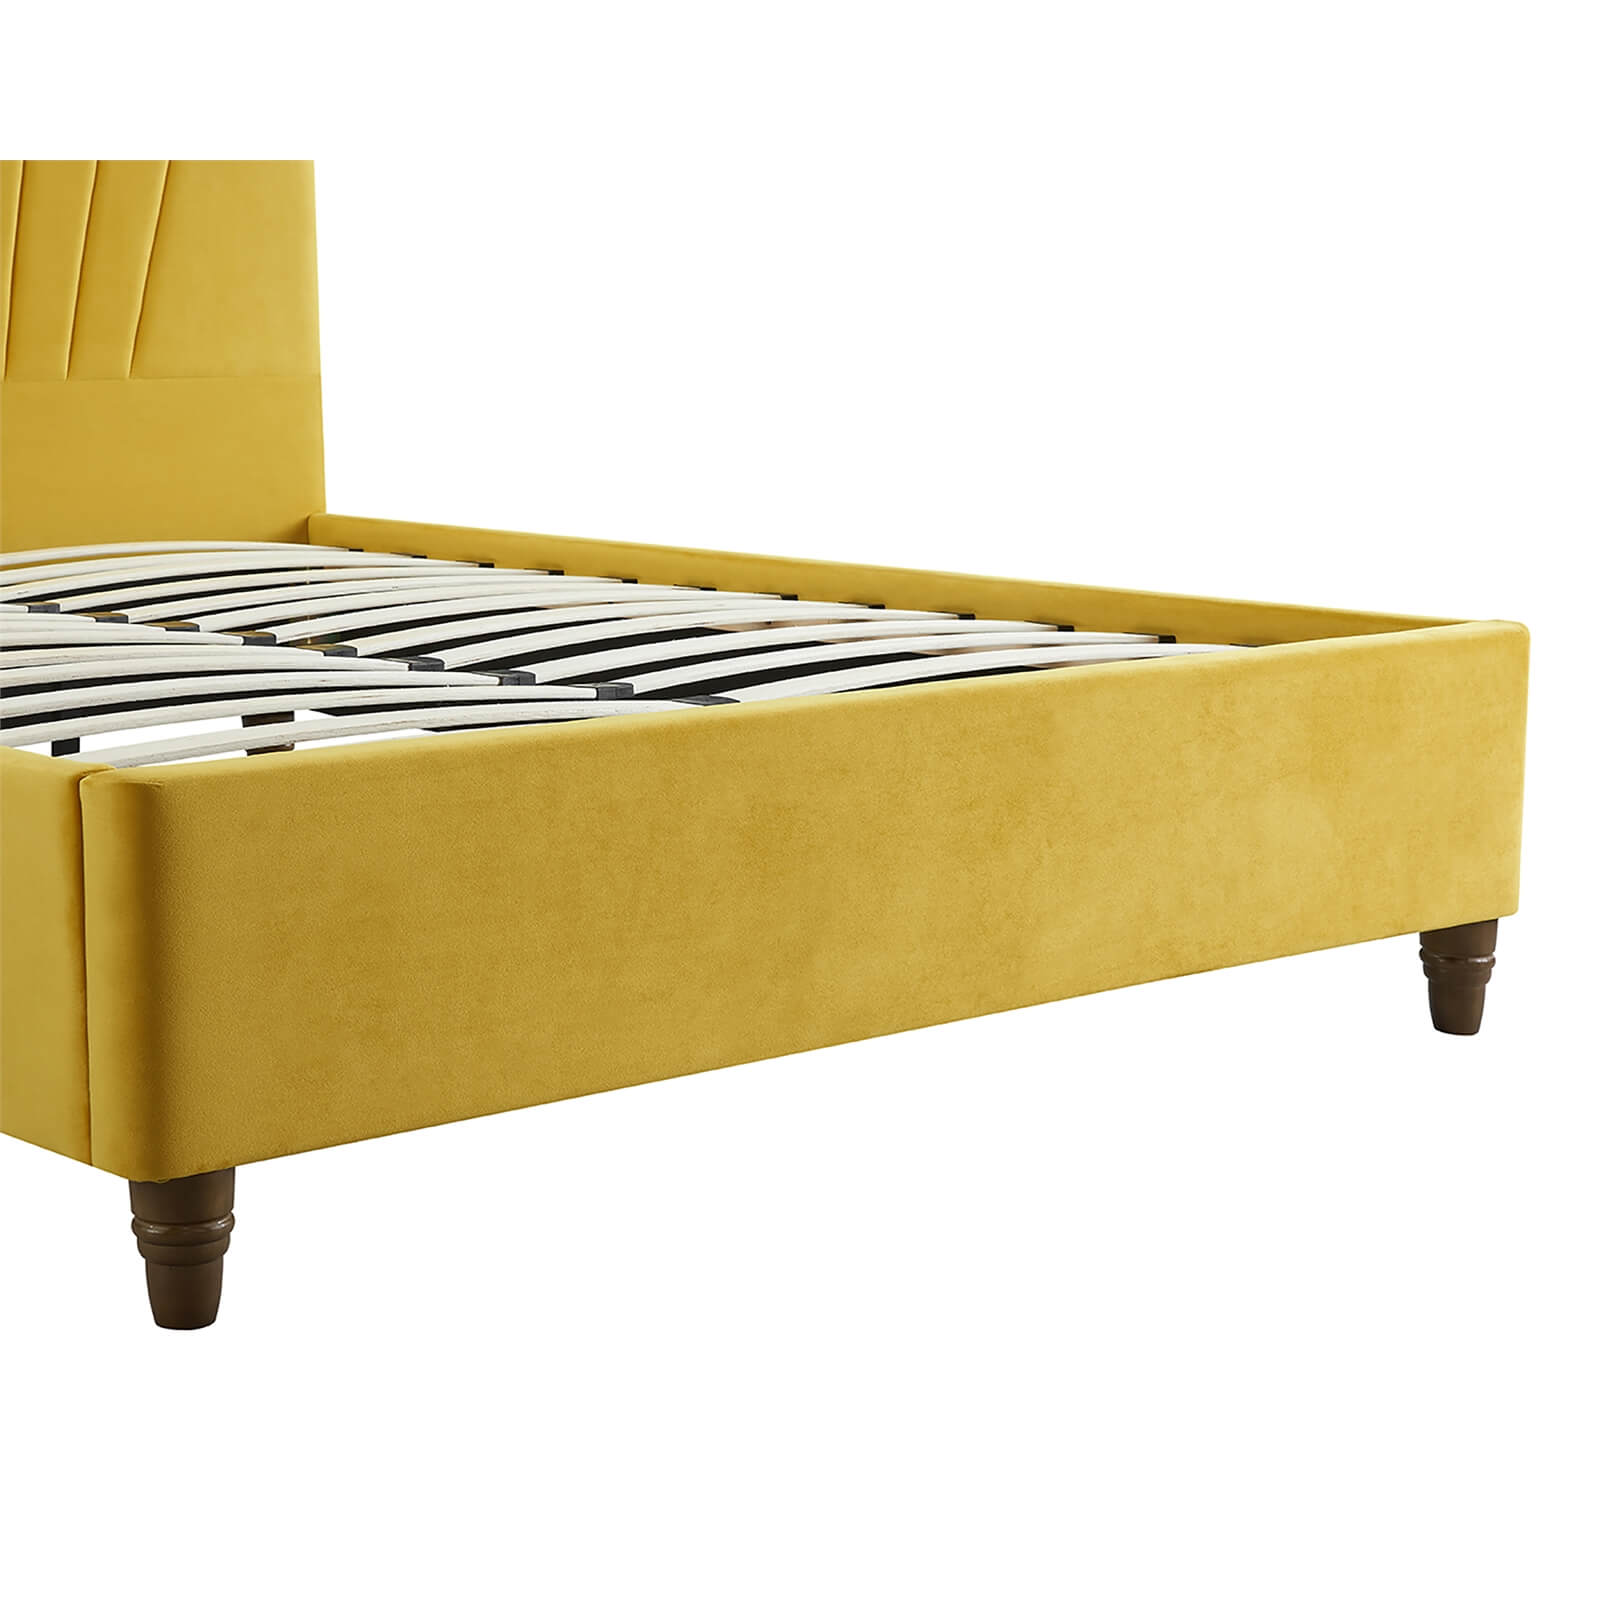 Lexie Velvet Upholstered King Size Bed - Mustard